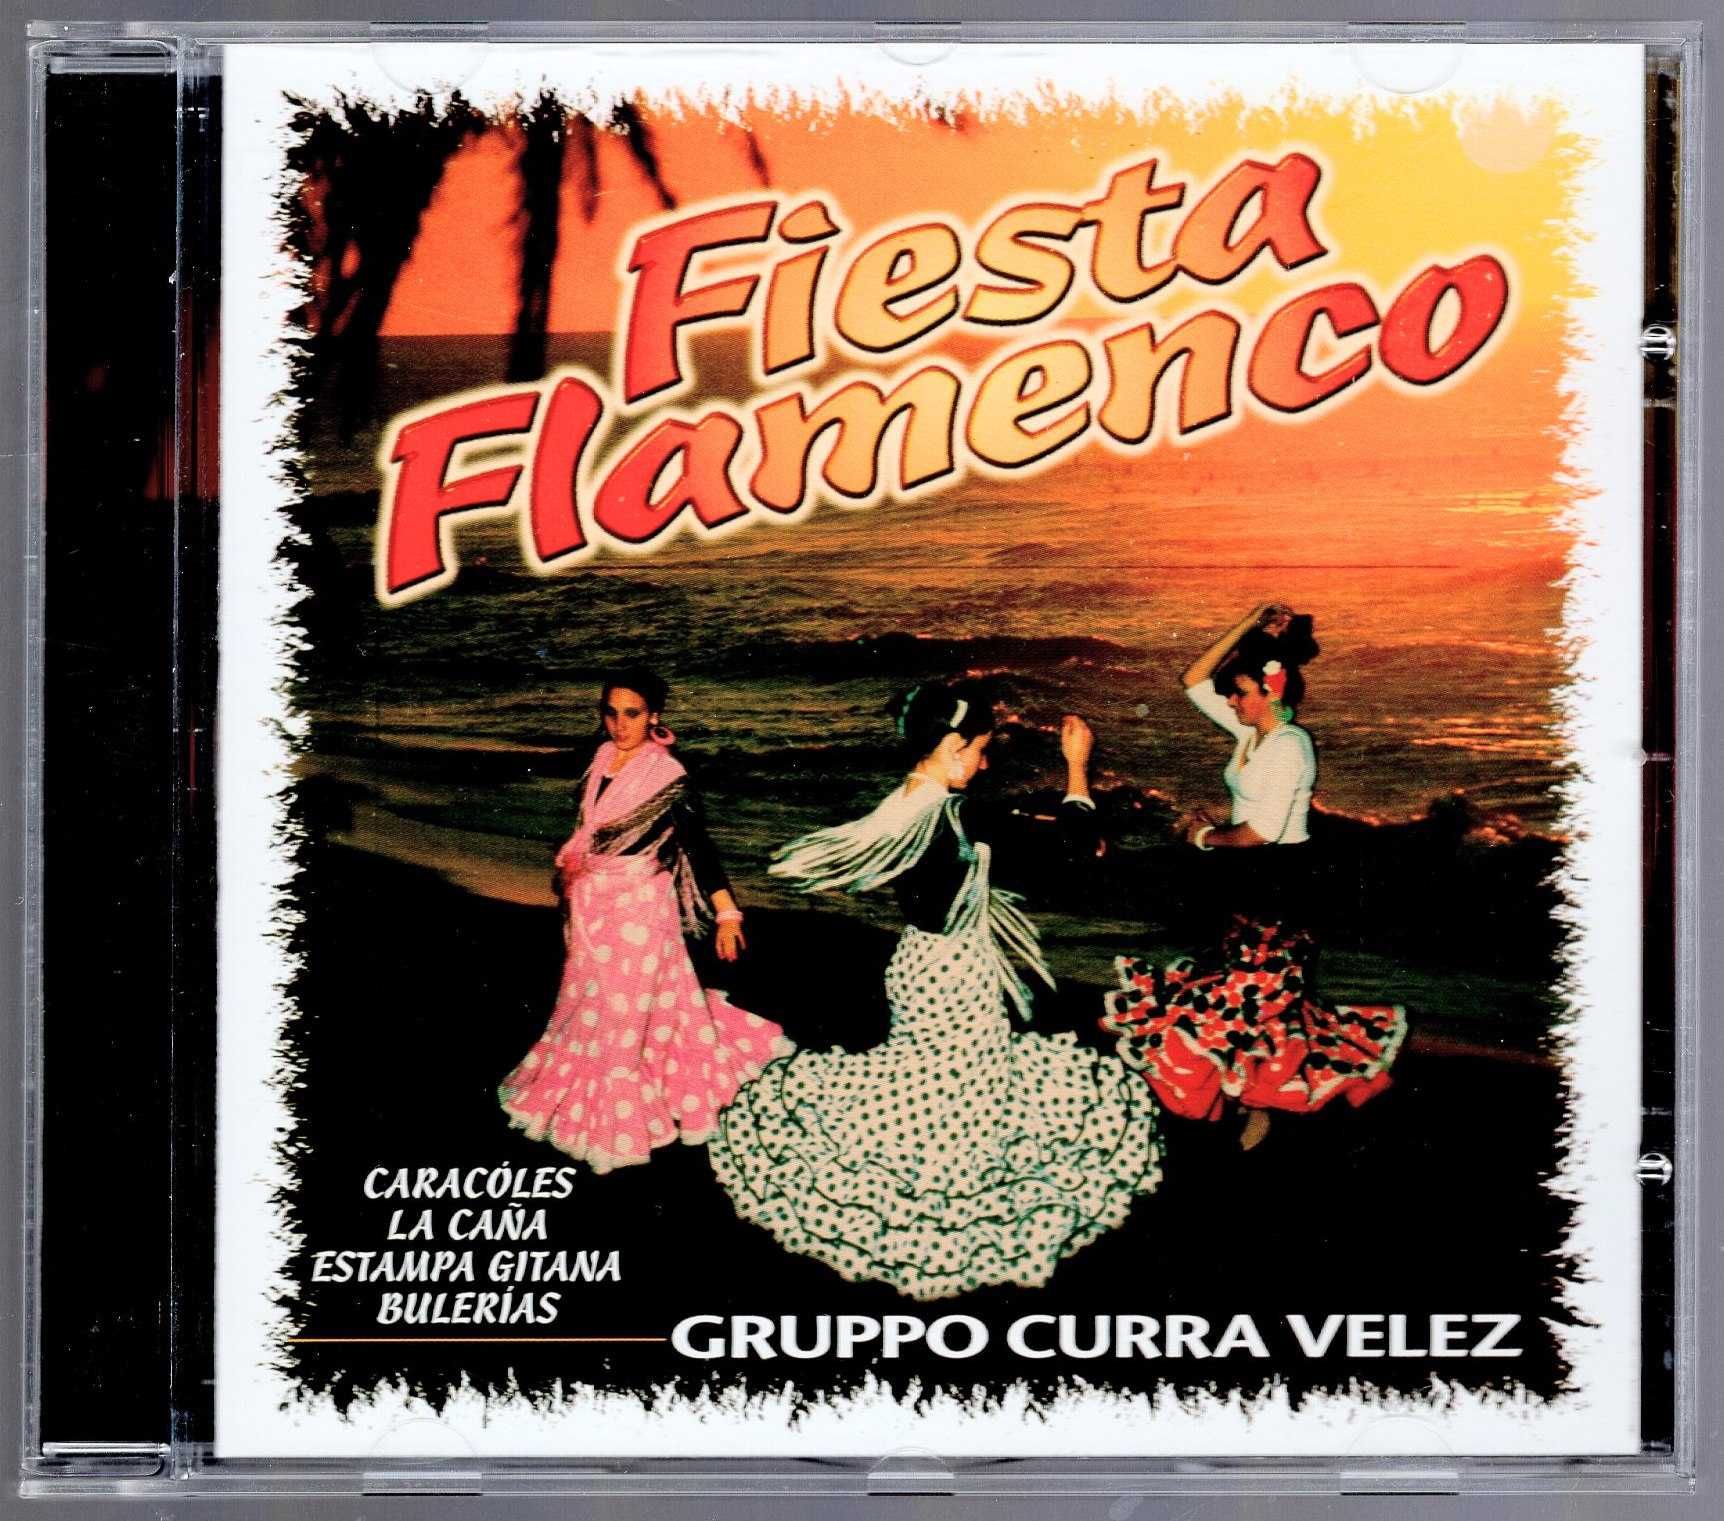 Gruppo Curra Velez - Fiesta Flamenco (CD)